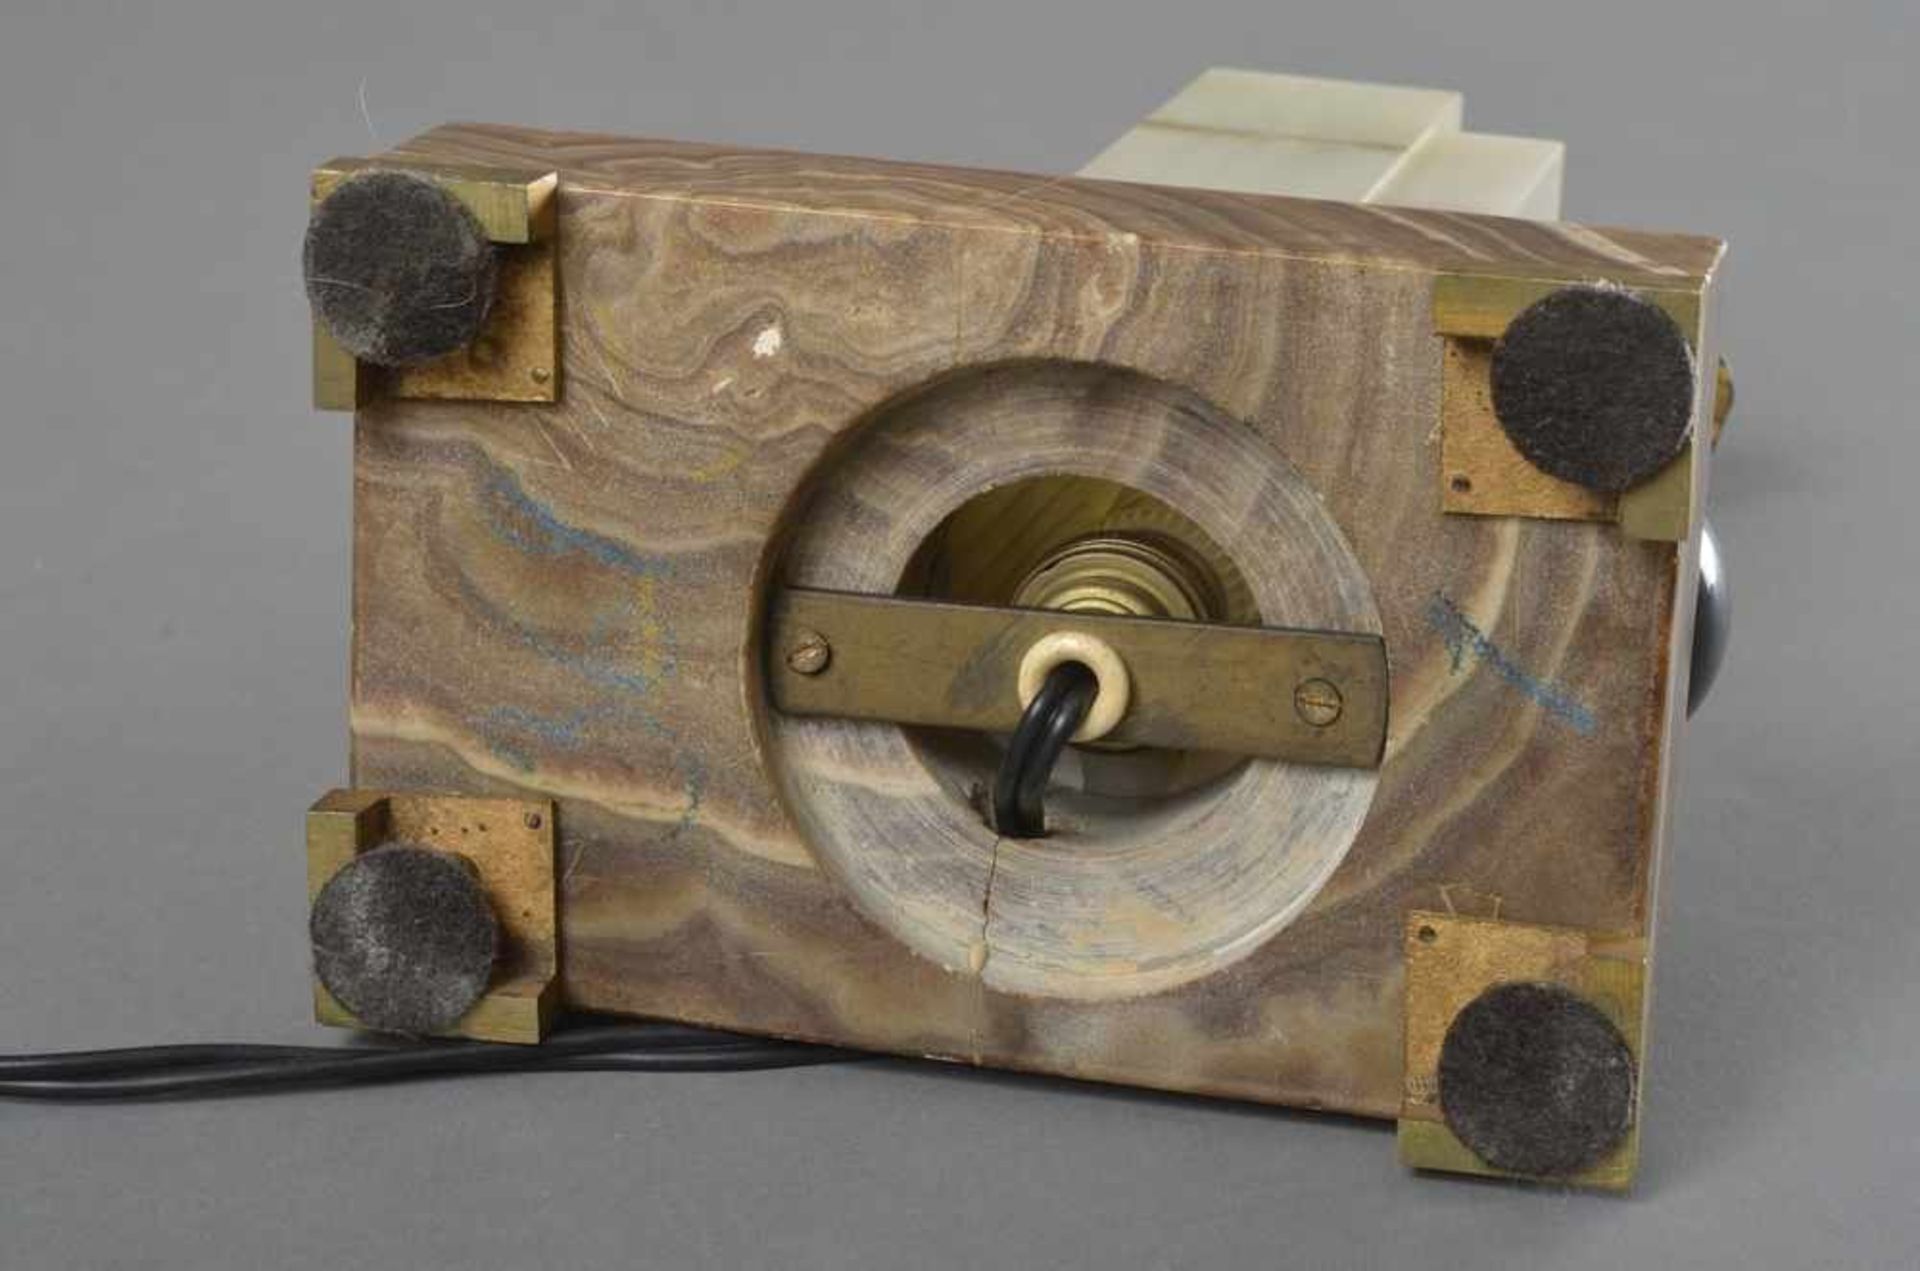 3 Teile Art Deco Uhren Ensemble: Kaminuhr und 2 elektrifizierte Beisteller, dreifarbiges Onyx mit - Image 6 of 8